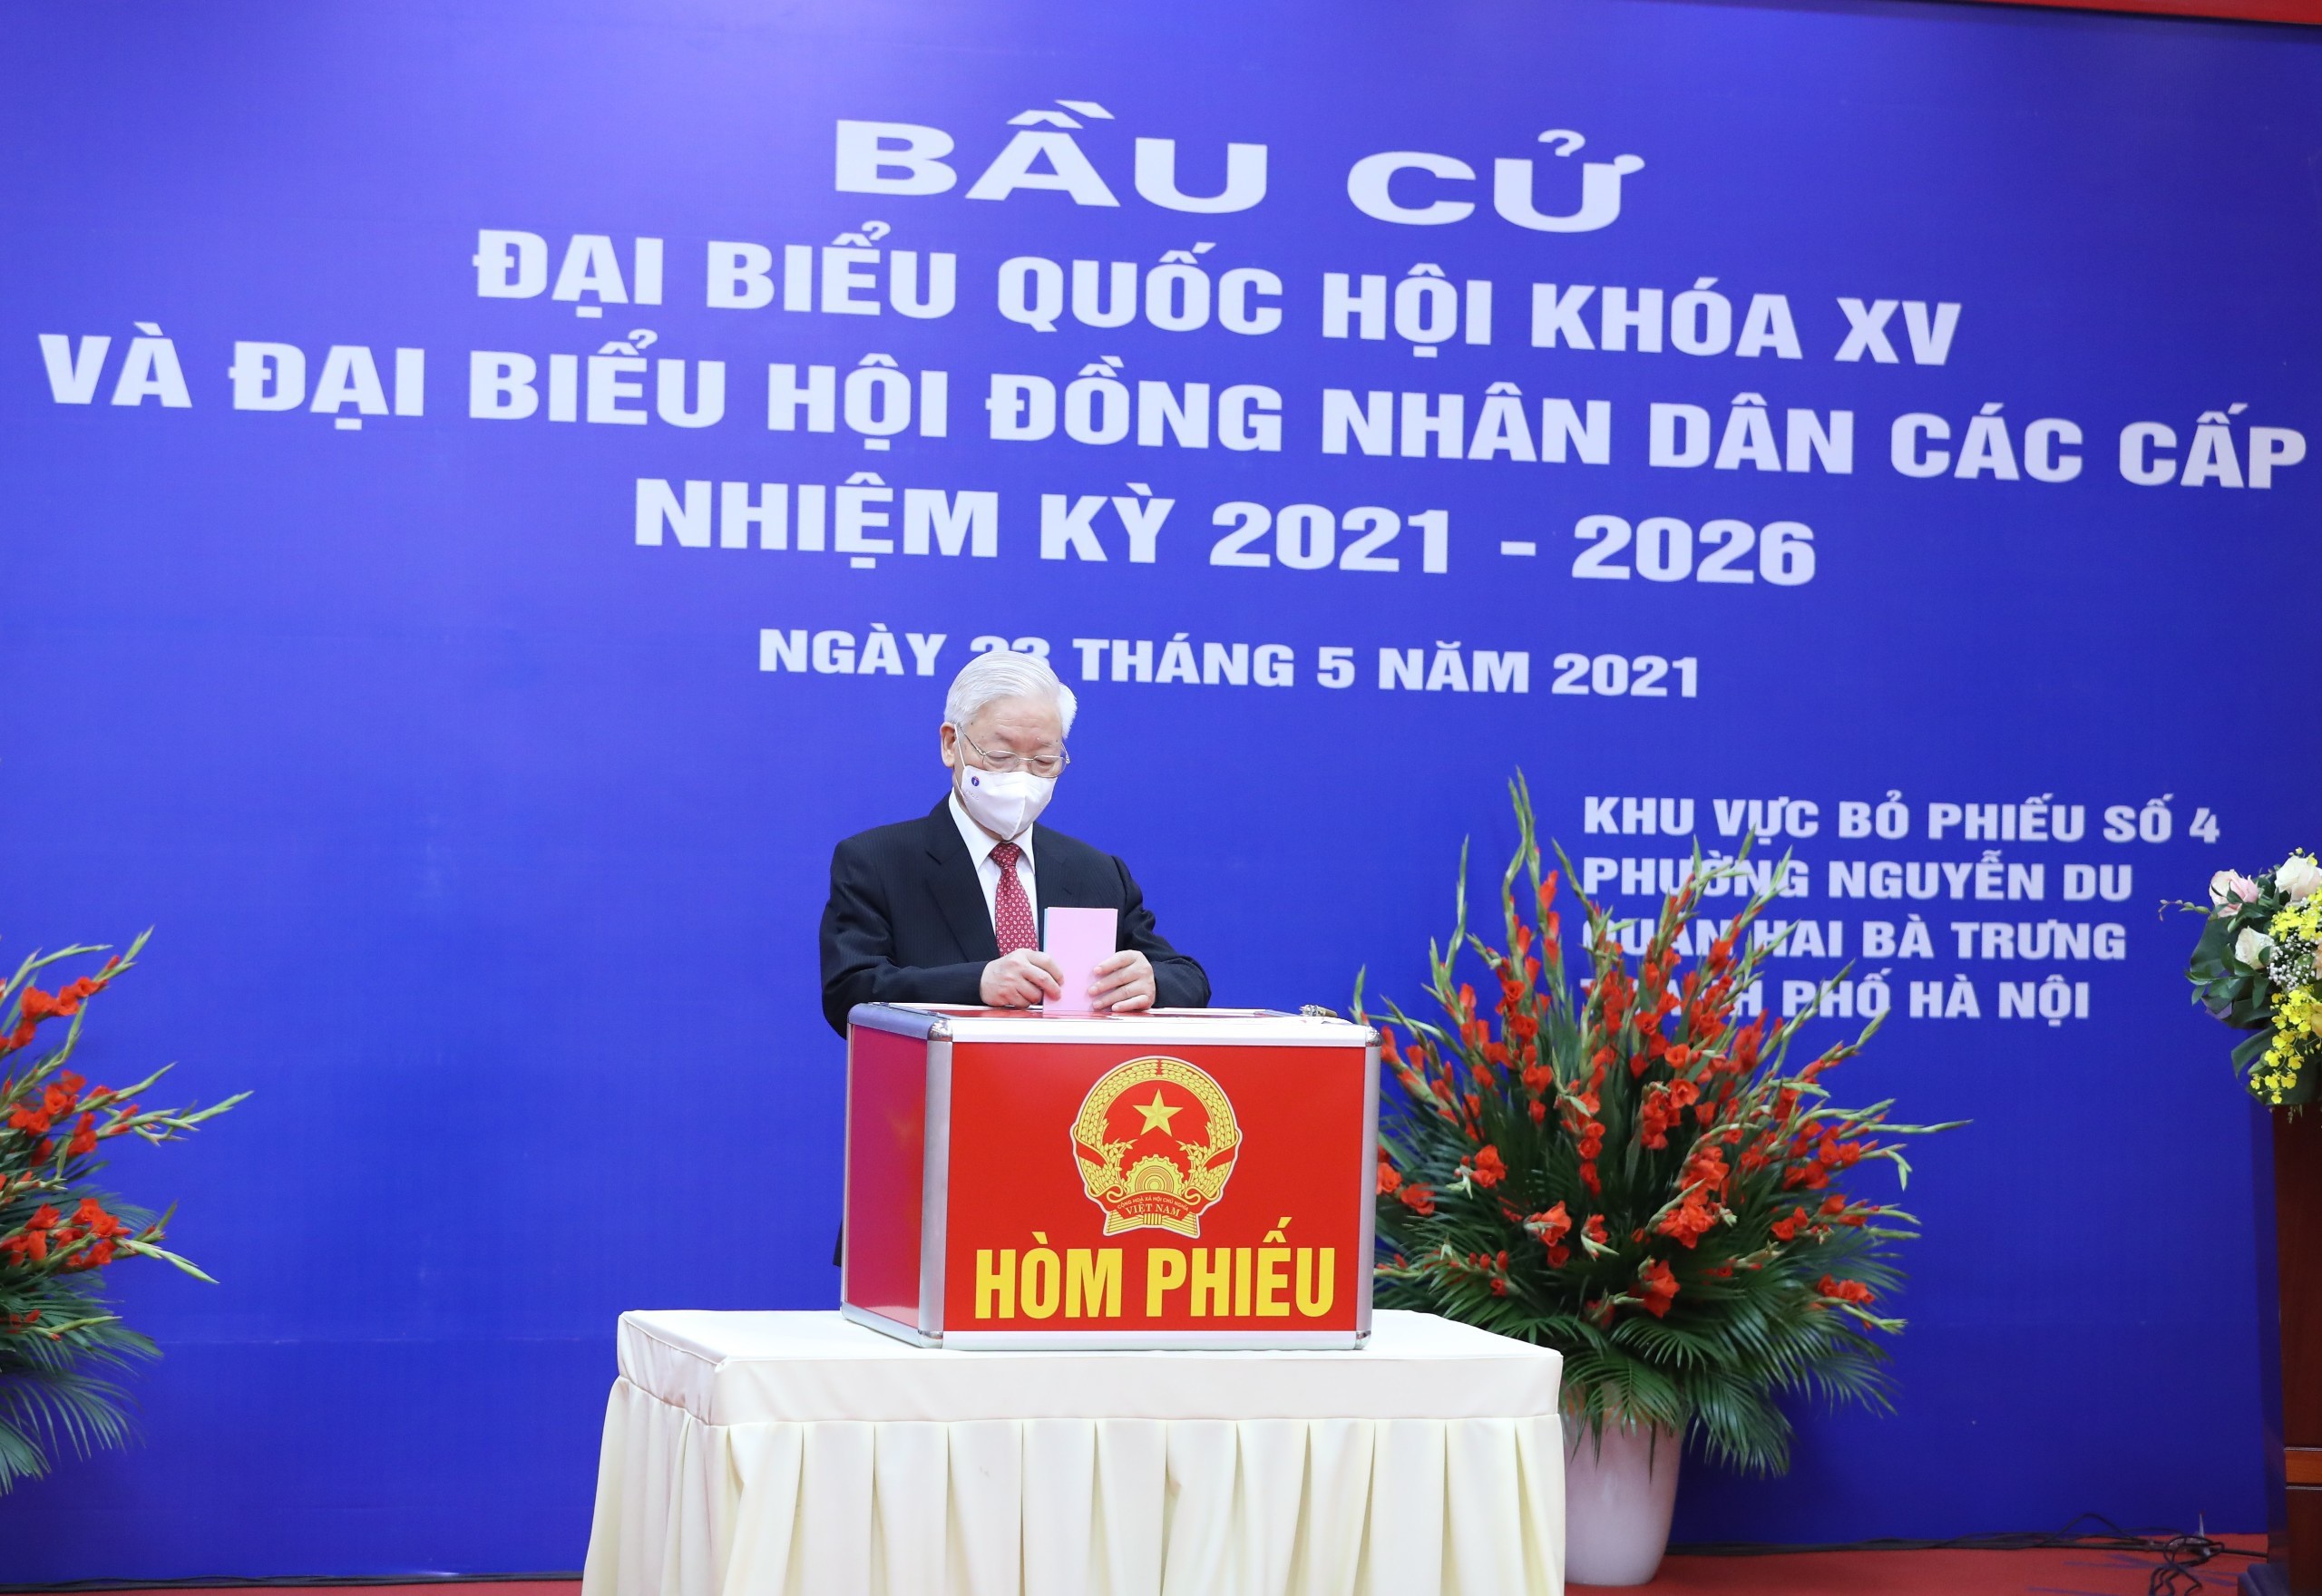 Tổng Bí thư Nguyễn Phú Trọng thực hiện quyền công dân tại khu vực bỏ phiếu số 4, phường Nguyễn Du, quận Hai Bà Trưng, thành phố Hà Nội. Ảnh: VGP